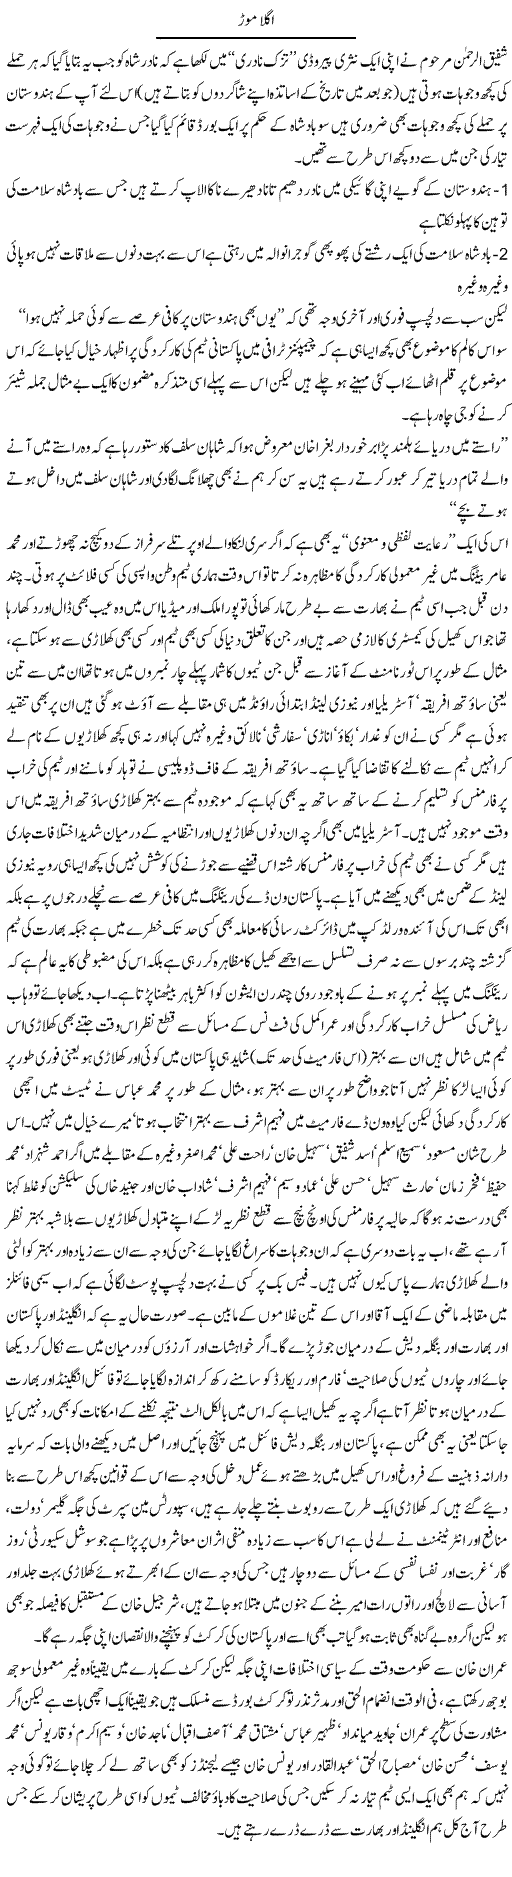 Agla Morr | Amjad Islam Amjad | Daily Urdu Columns